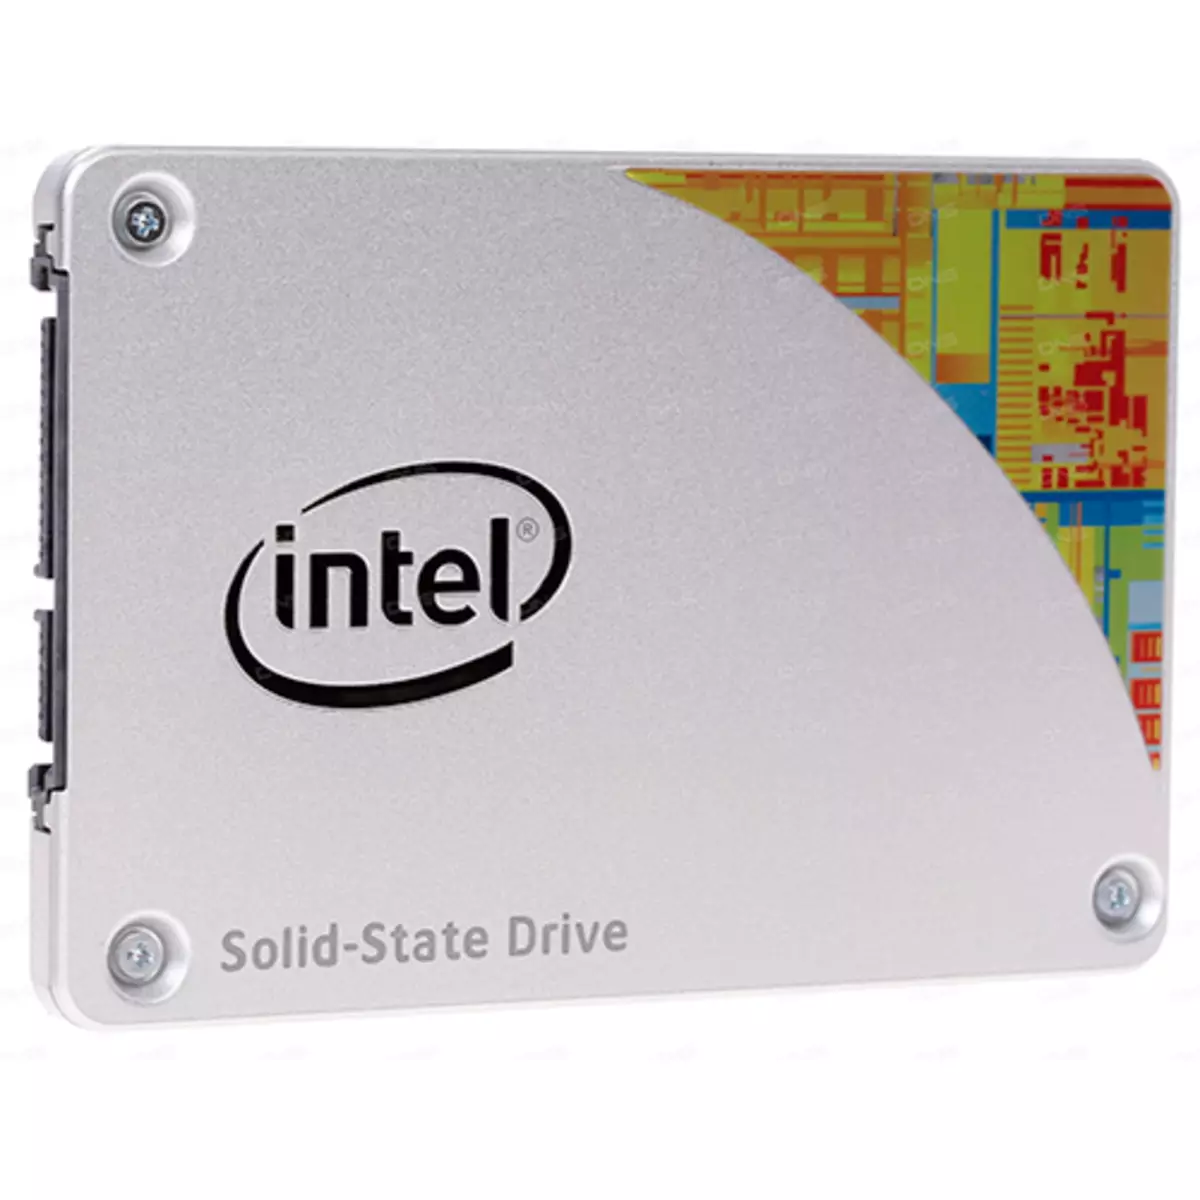 Компьютер SSD күрми: сәбәпләр һәм чишелеш